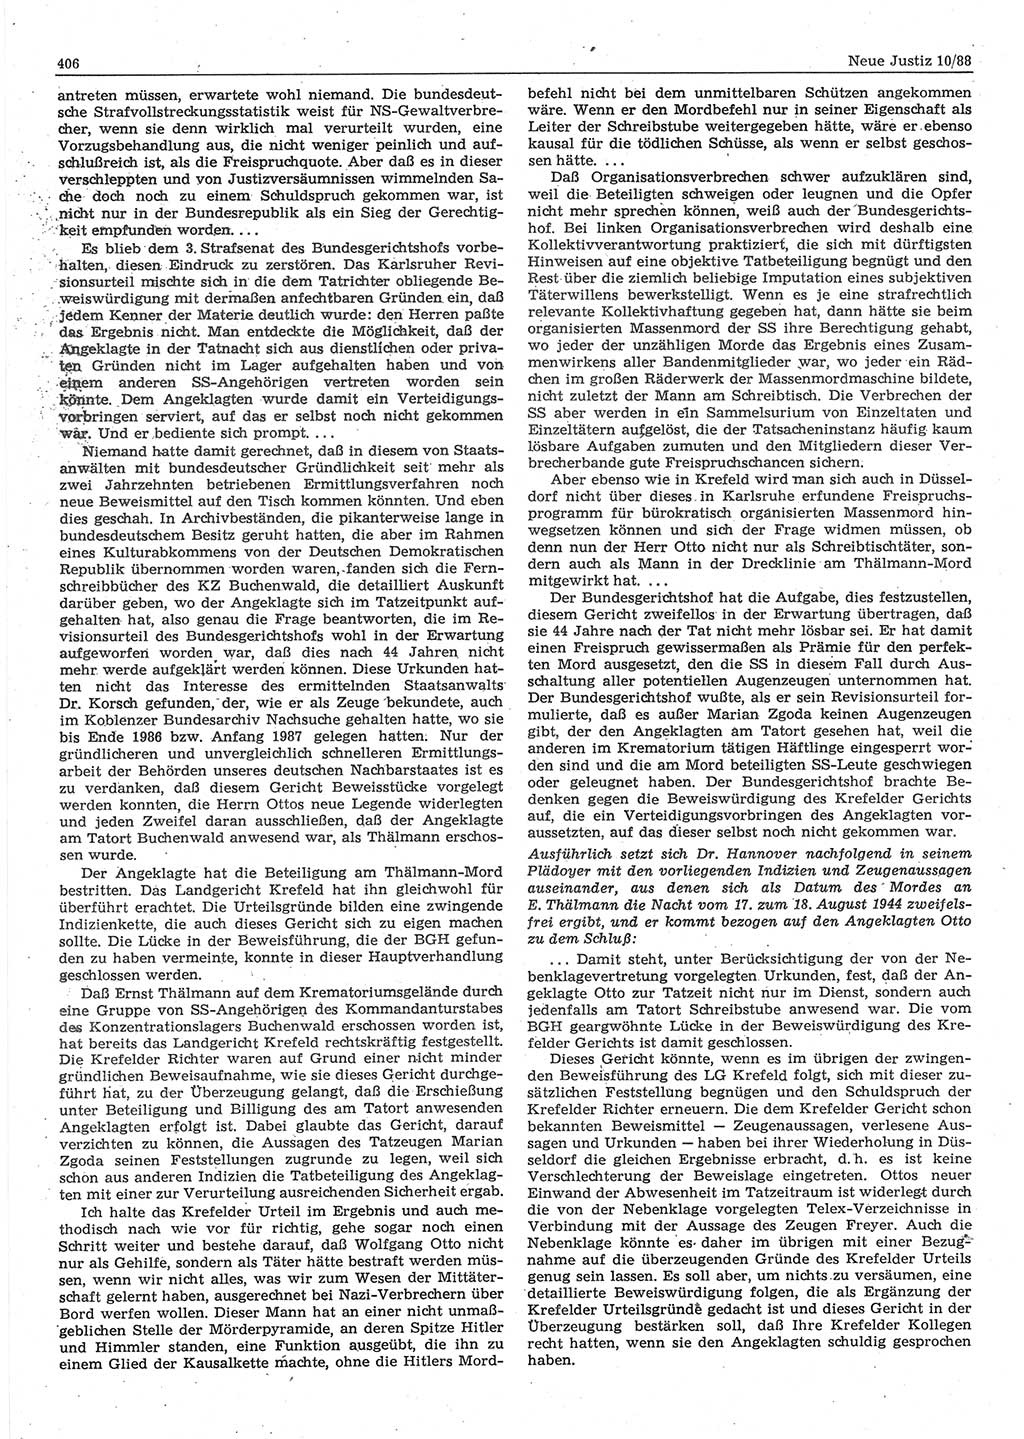 Neue Justiz (NJ), Zeitschrift für sozialistisches Recht und Gesetzlichkeit [Deutsche Demokratische Republik (DDR)], 42. Jahrgang 1988, Seite 406 (NJ DDR 1988, S. 406)